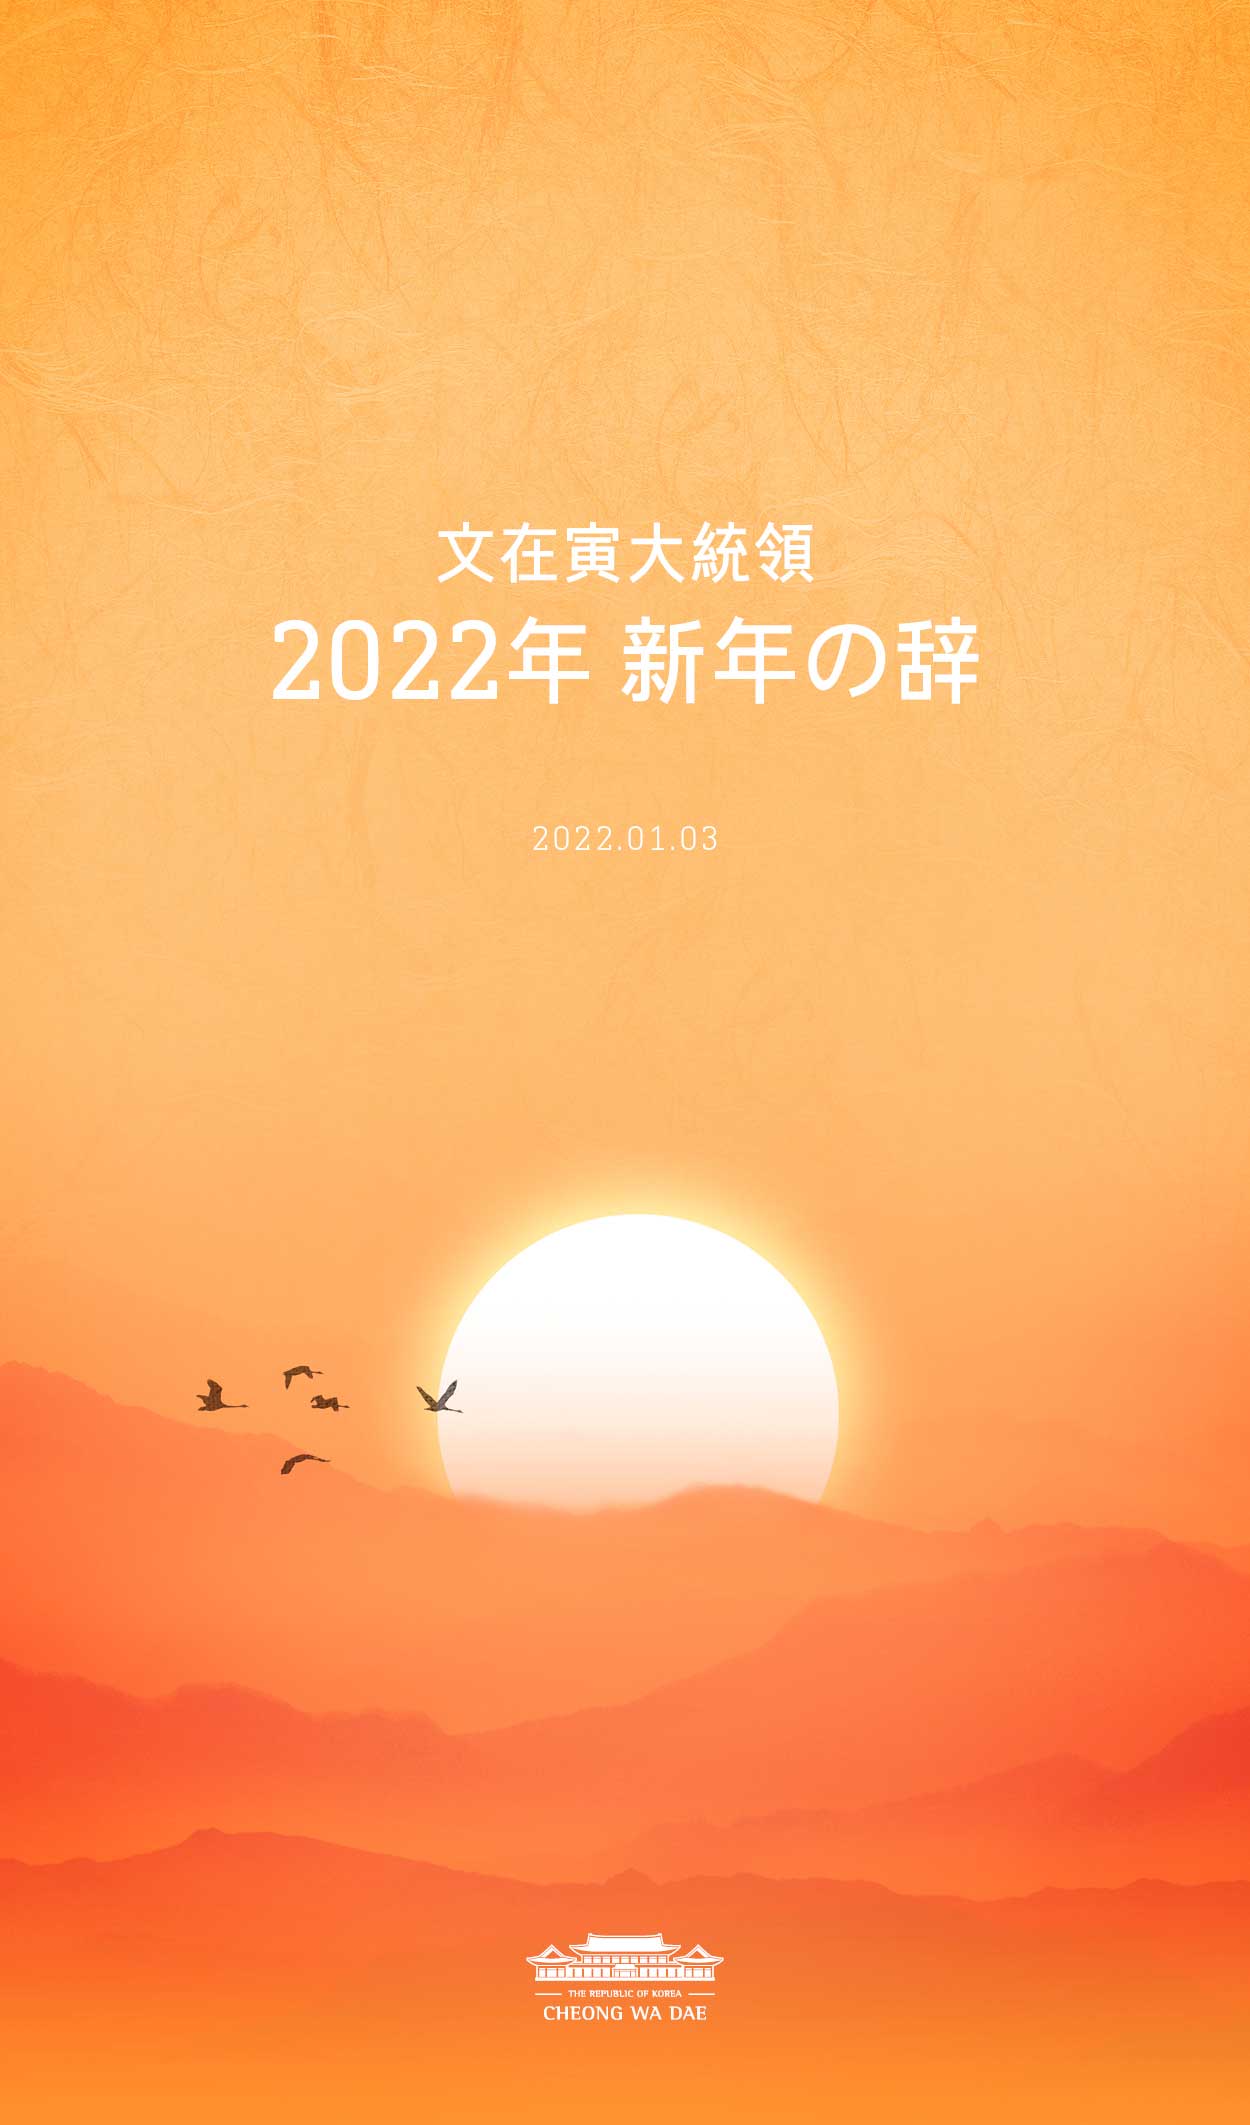 文在寅大統領 2022年 新年の辞 1